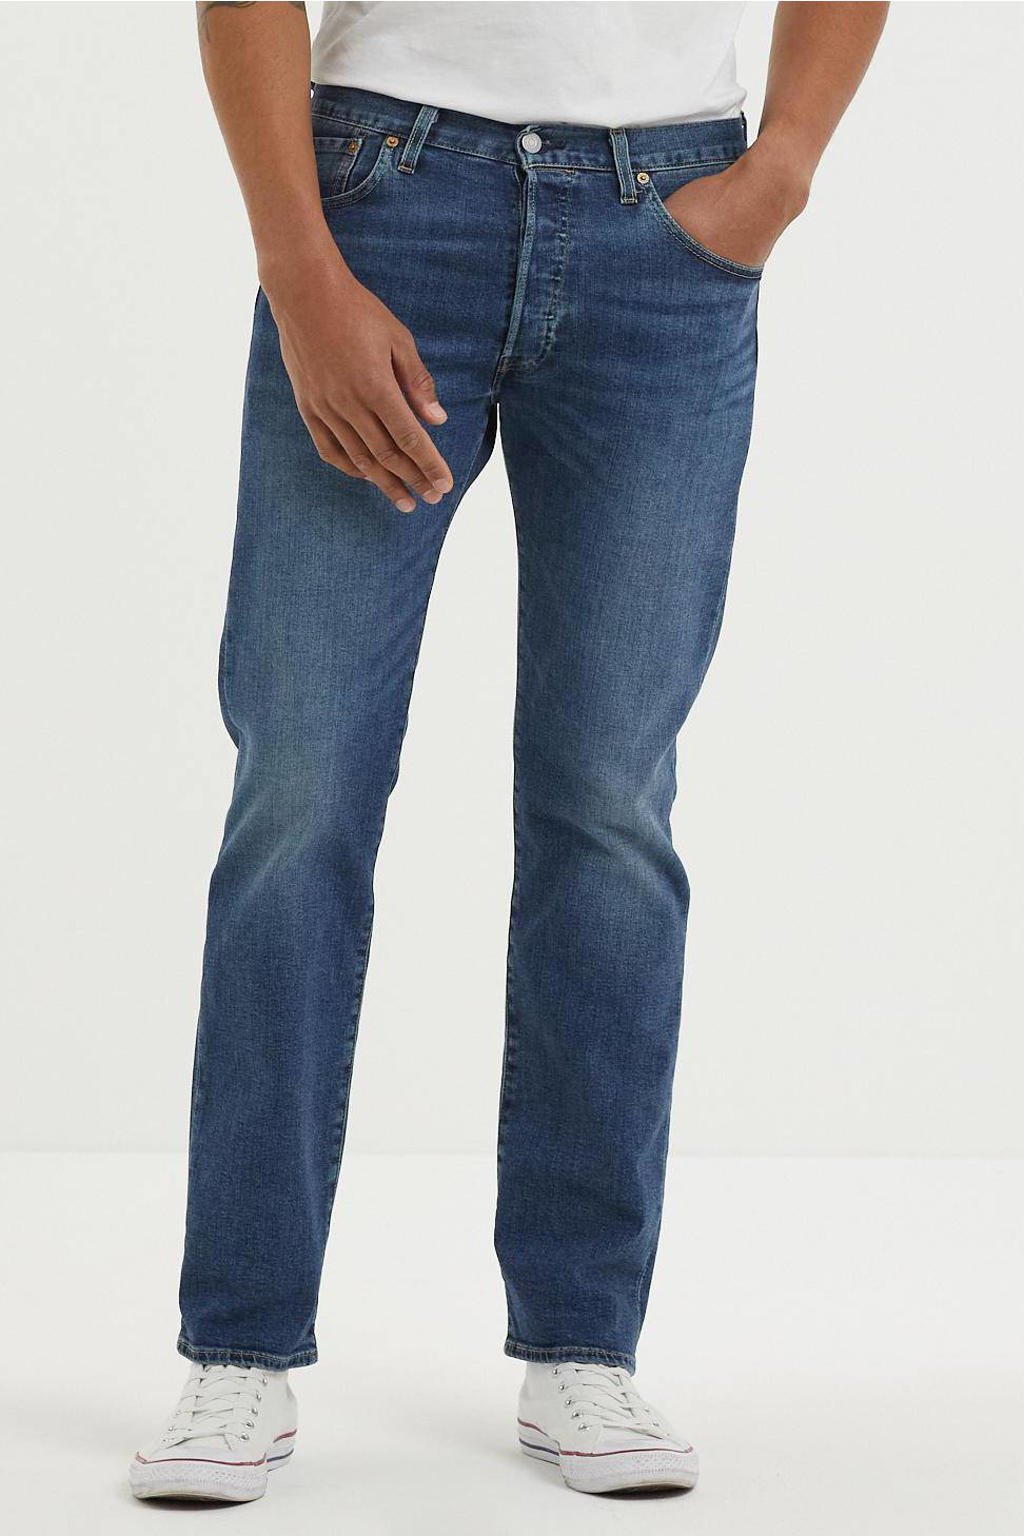 Levi's 501 straight fit jeans ubbles